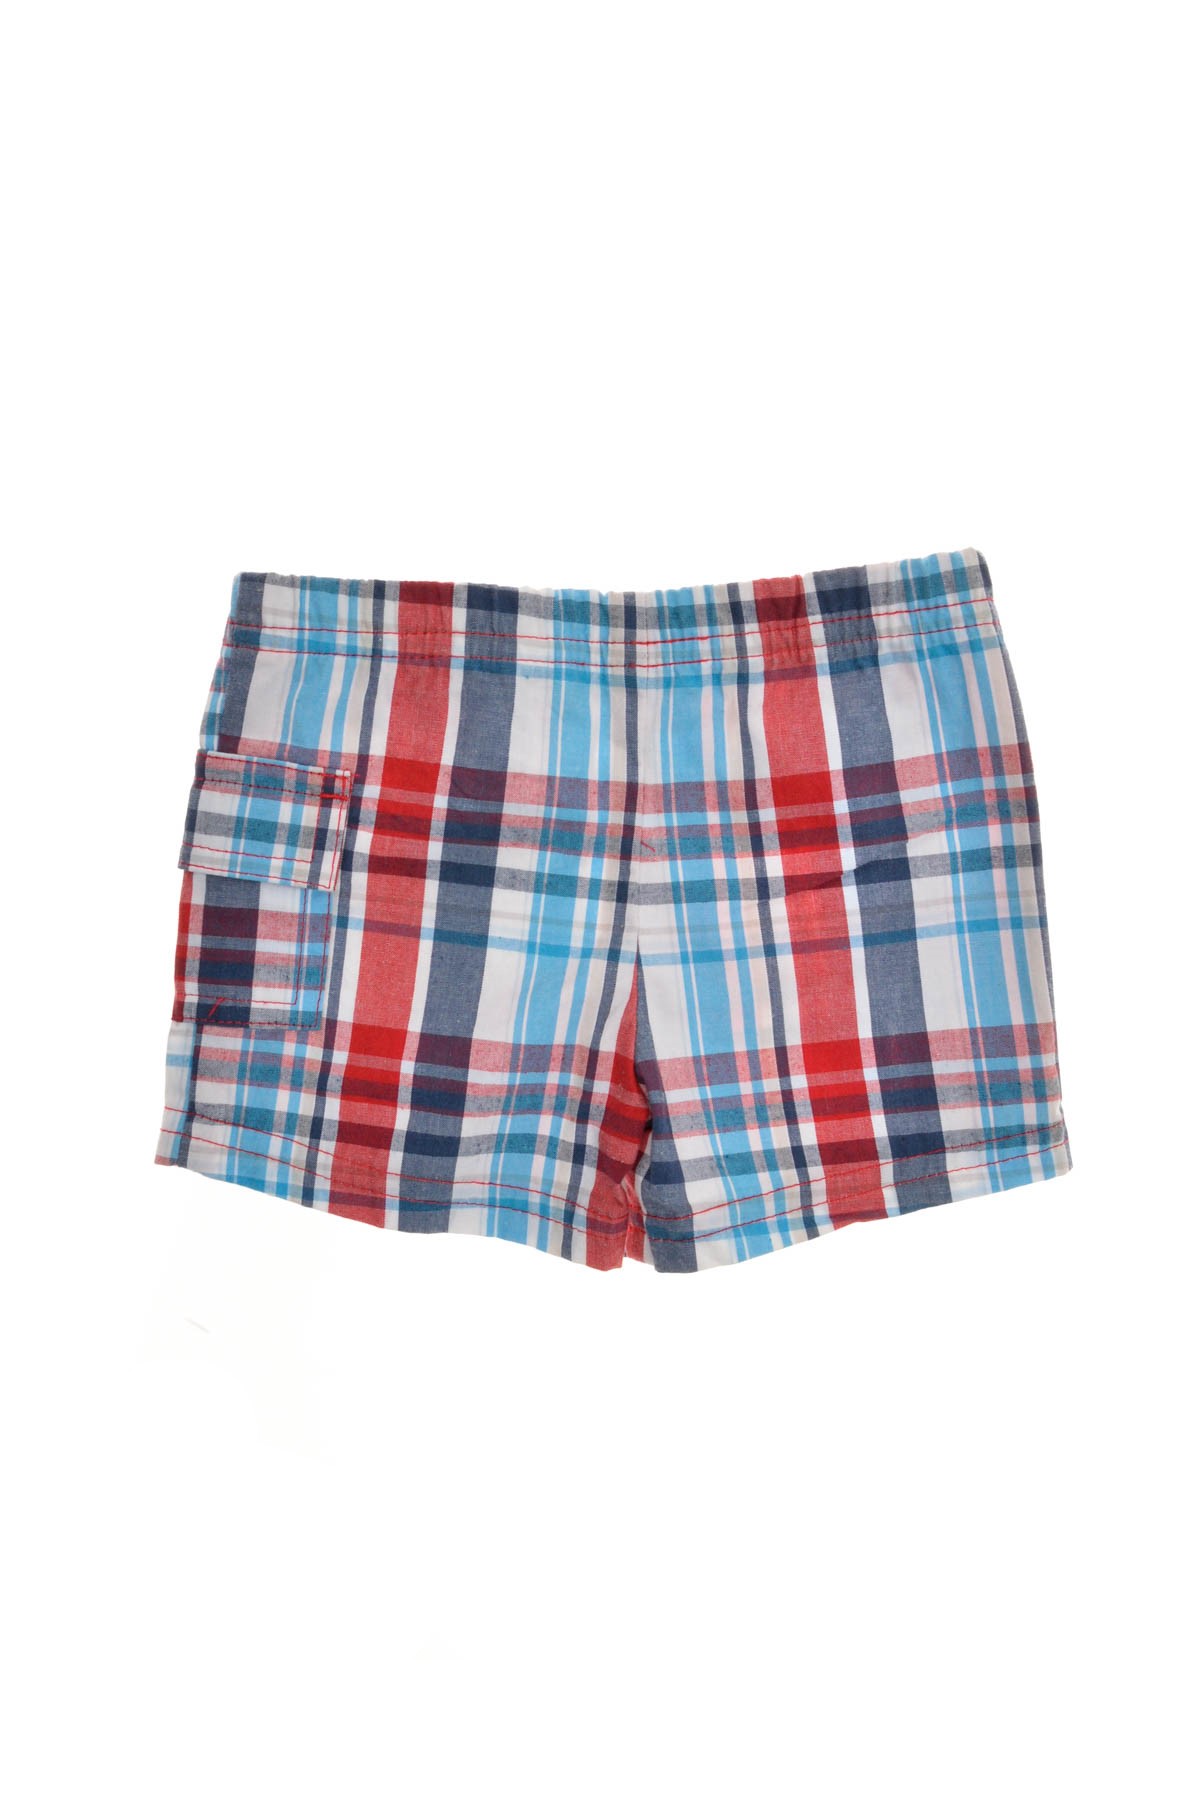 Pantaloni scurți pentru băiat - Garanimals - 1